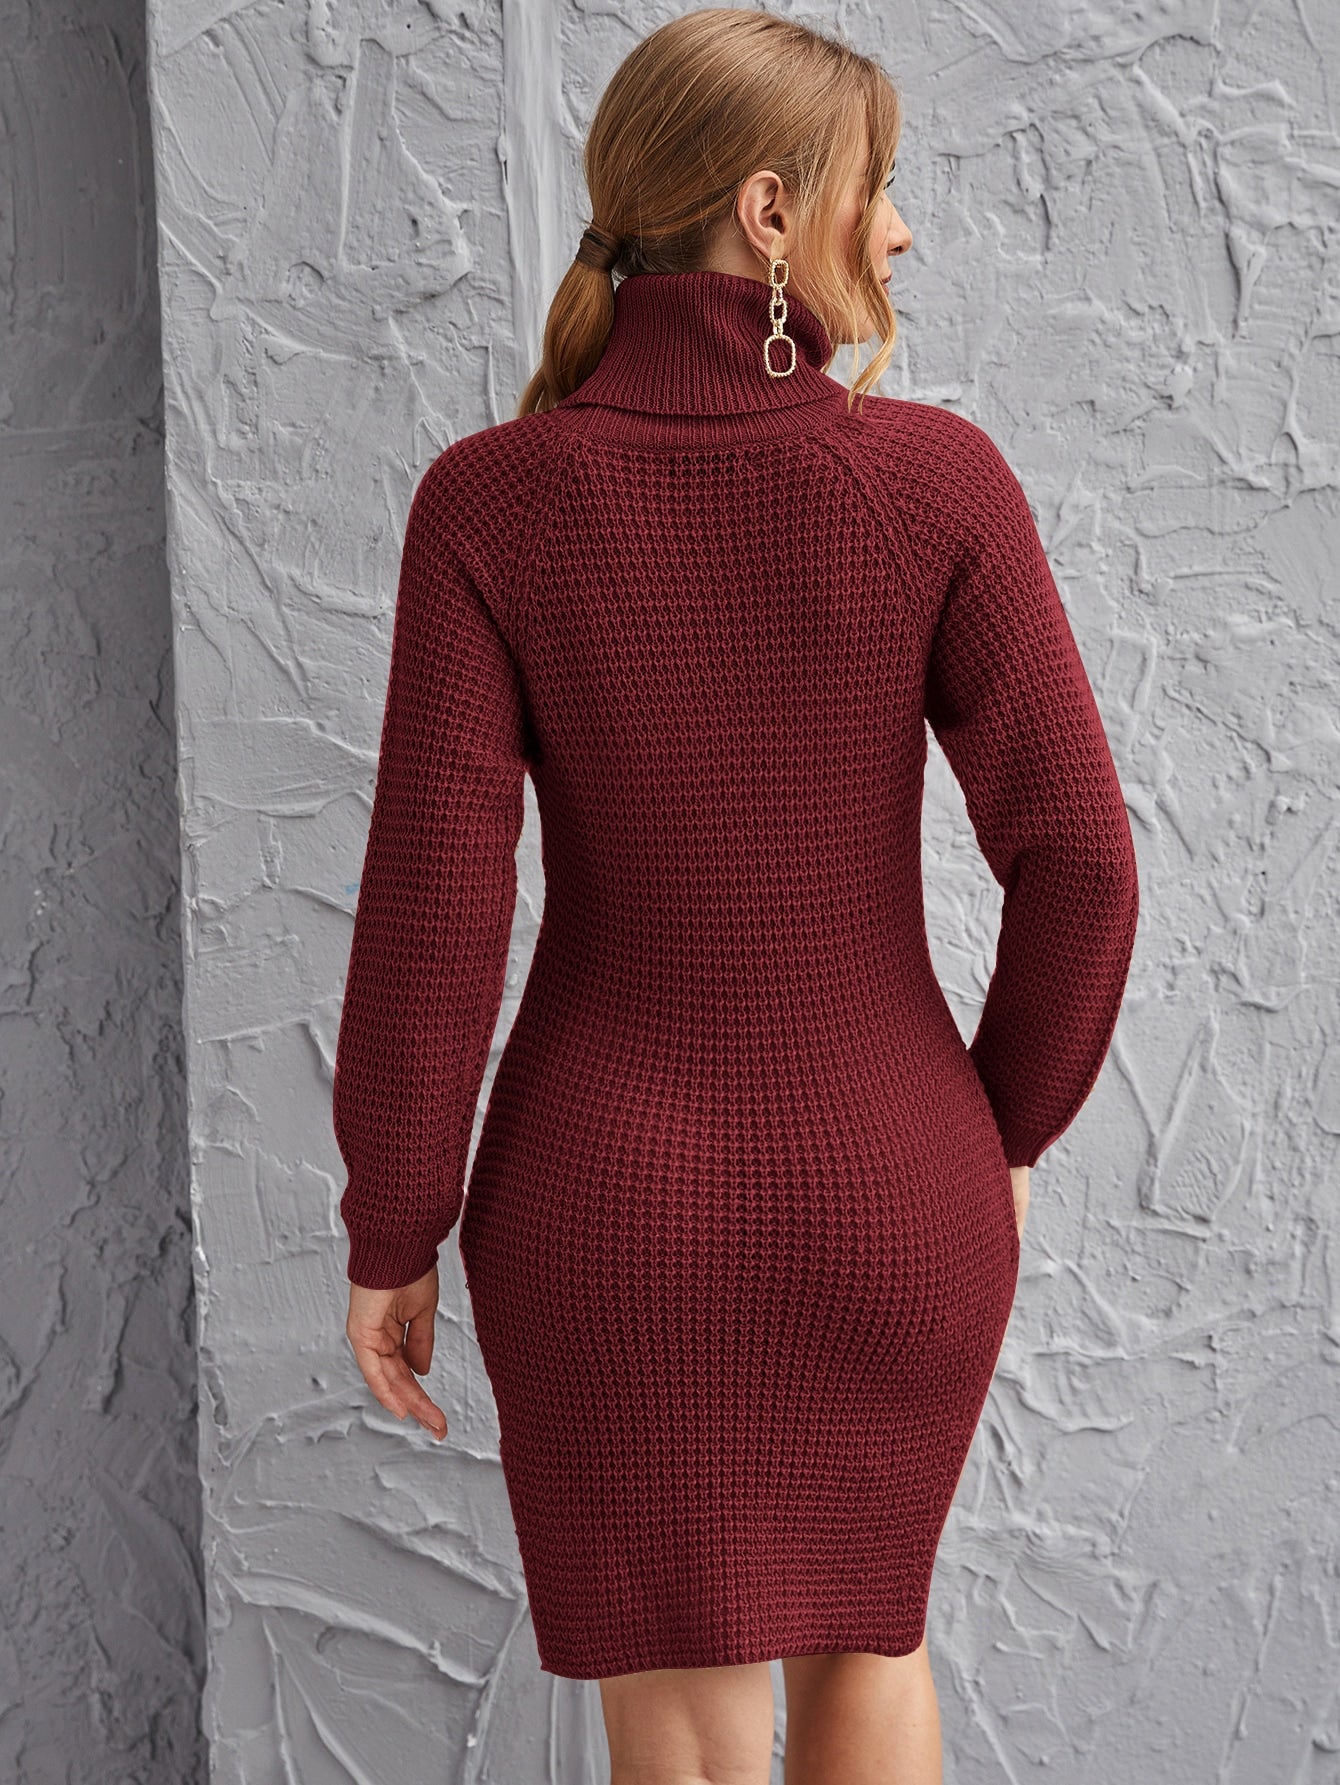 Rolled Neck Raglan Sleeve Split Side Sweater Dress